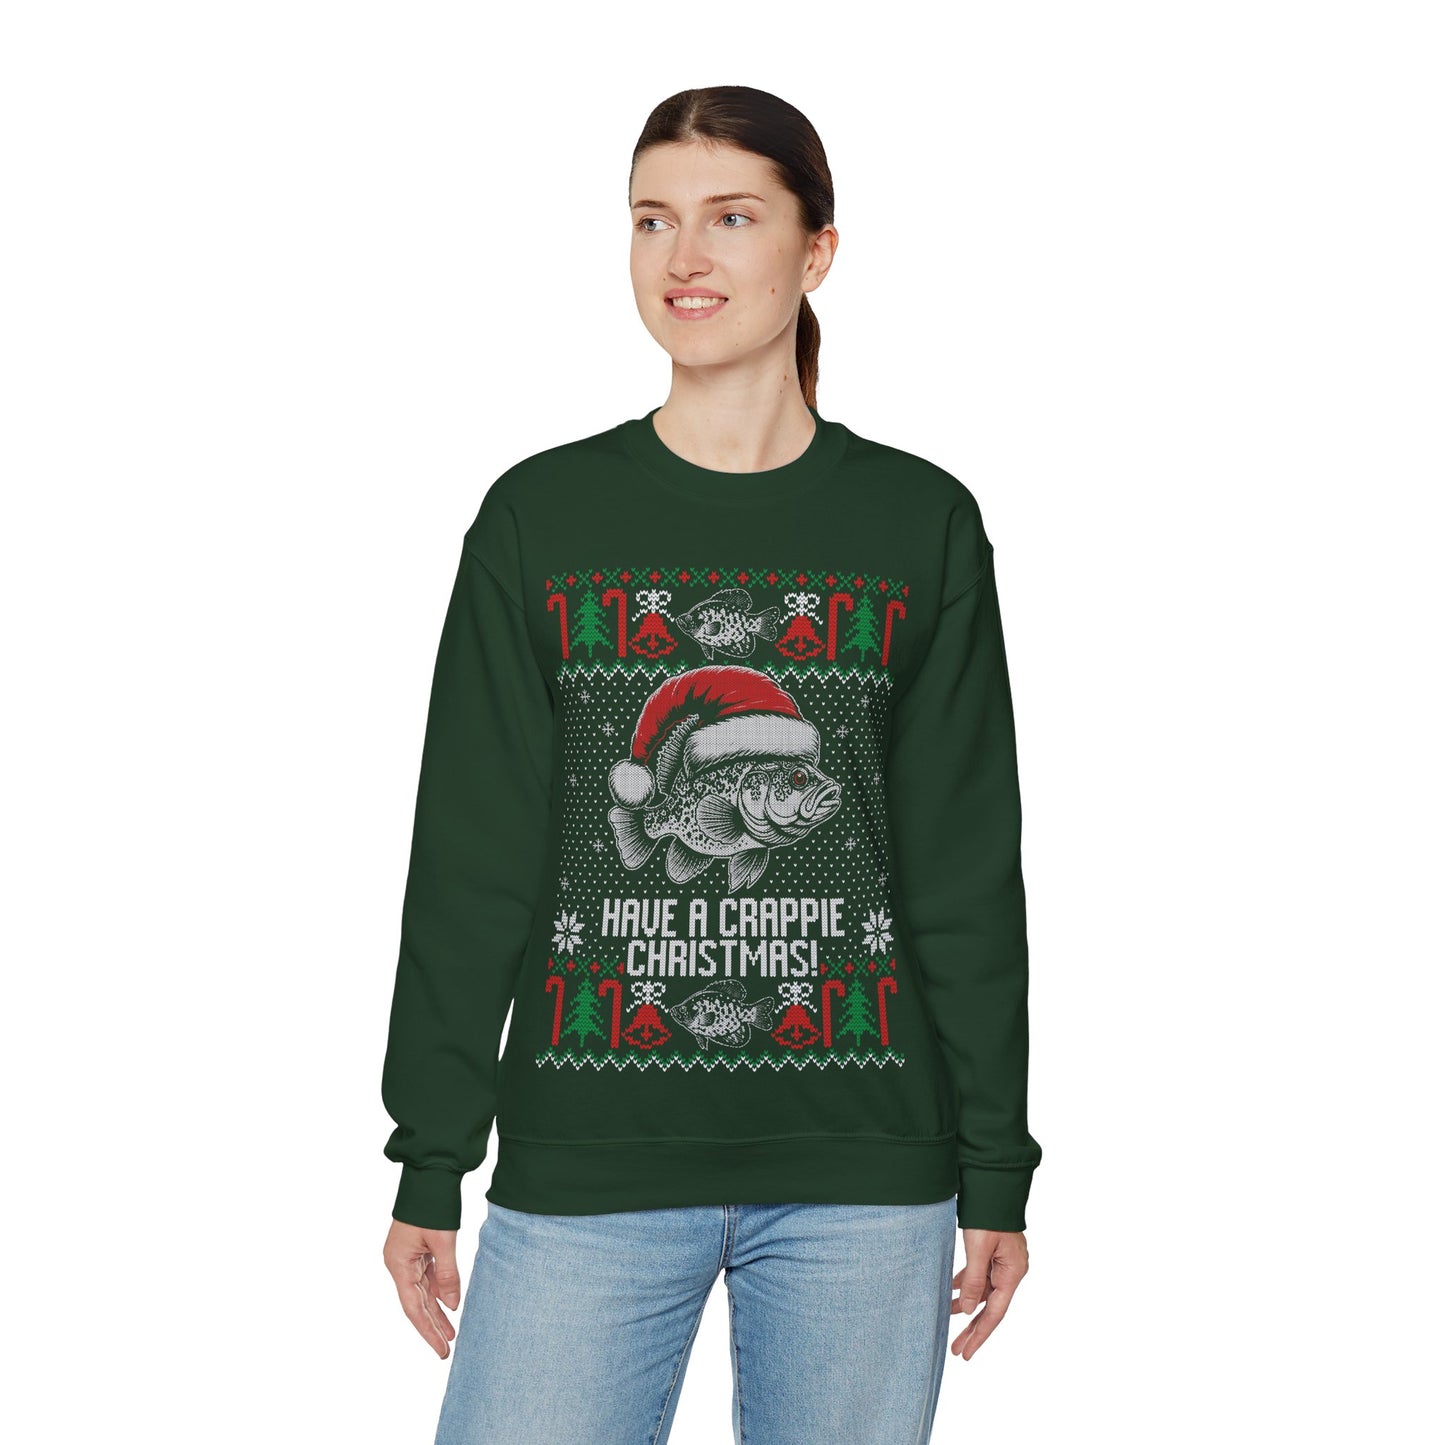 Ugly Crappie Christmas Sweater Crewneck Sweatshirt